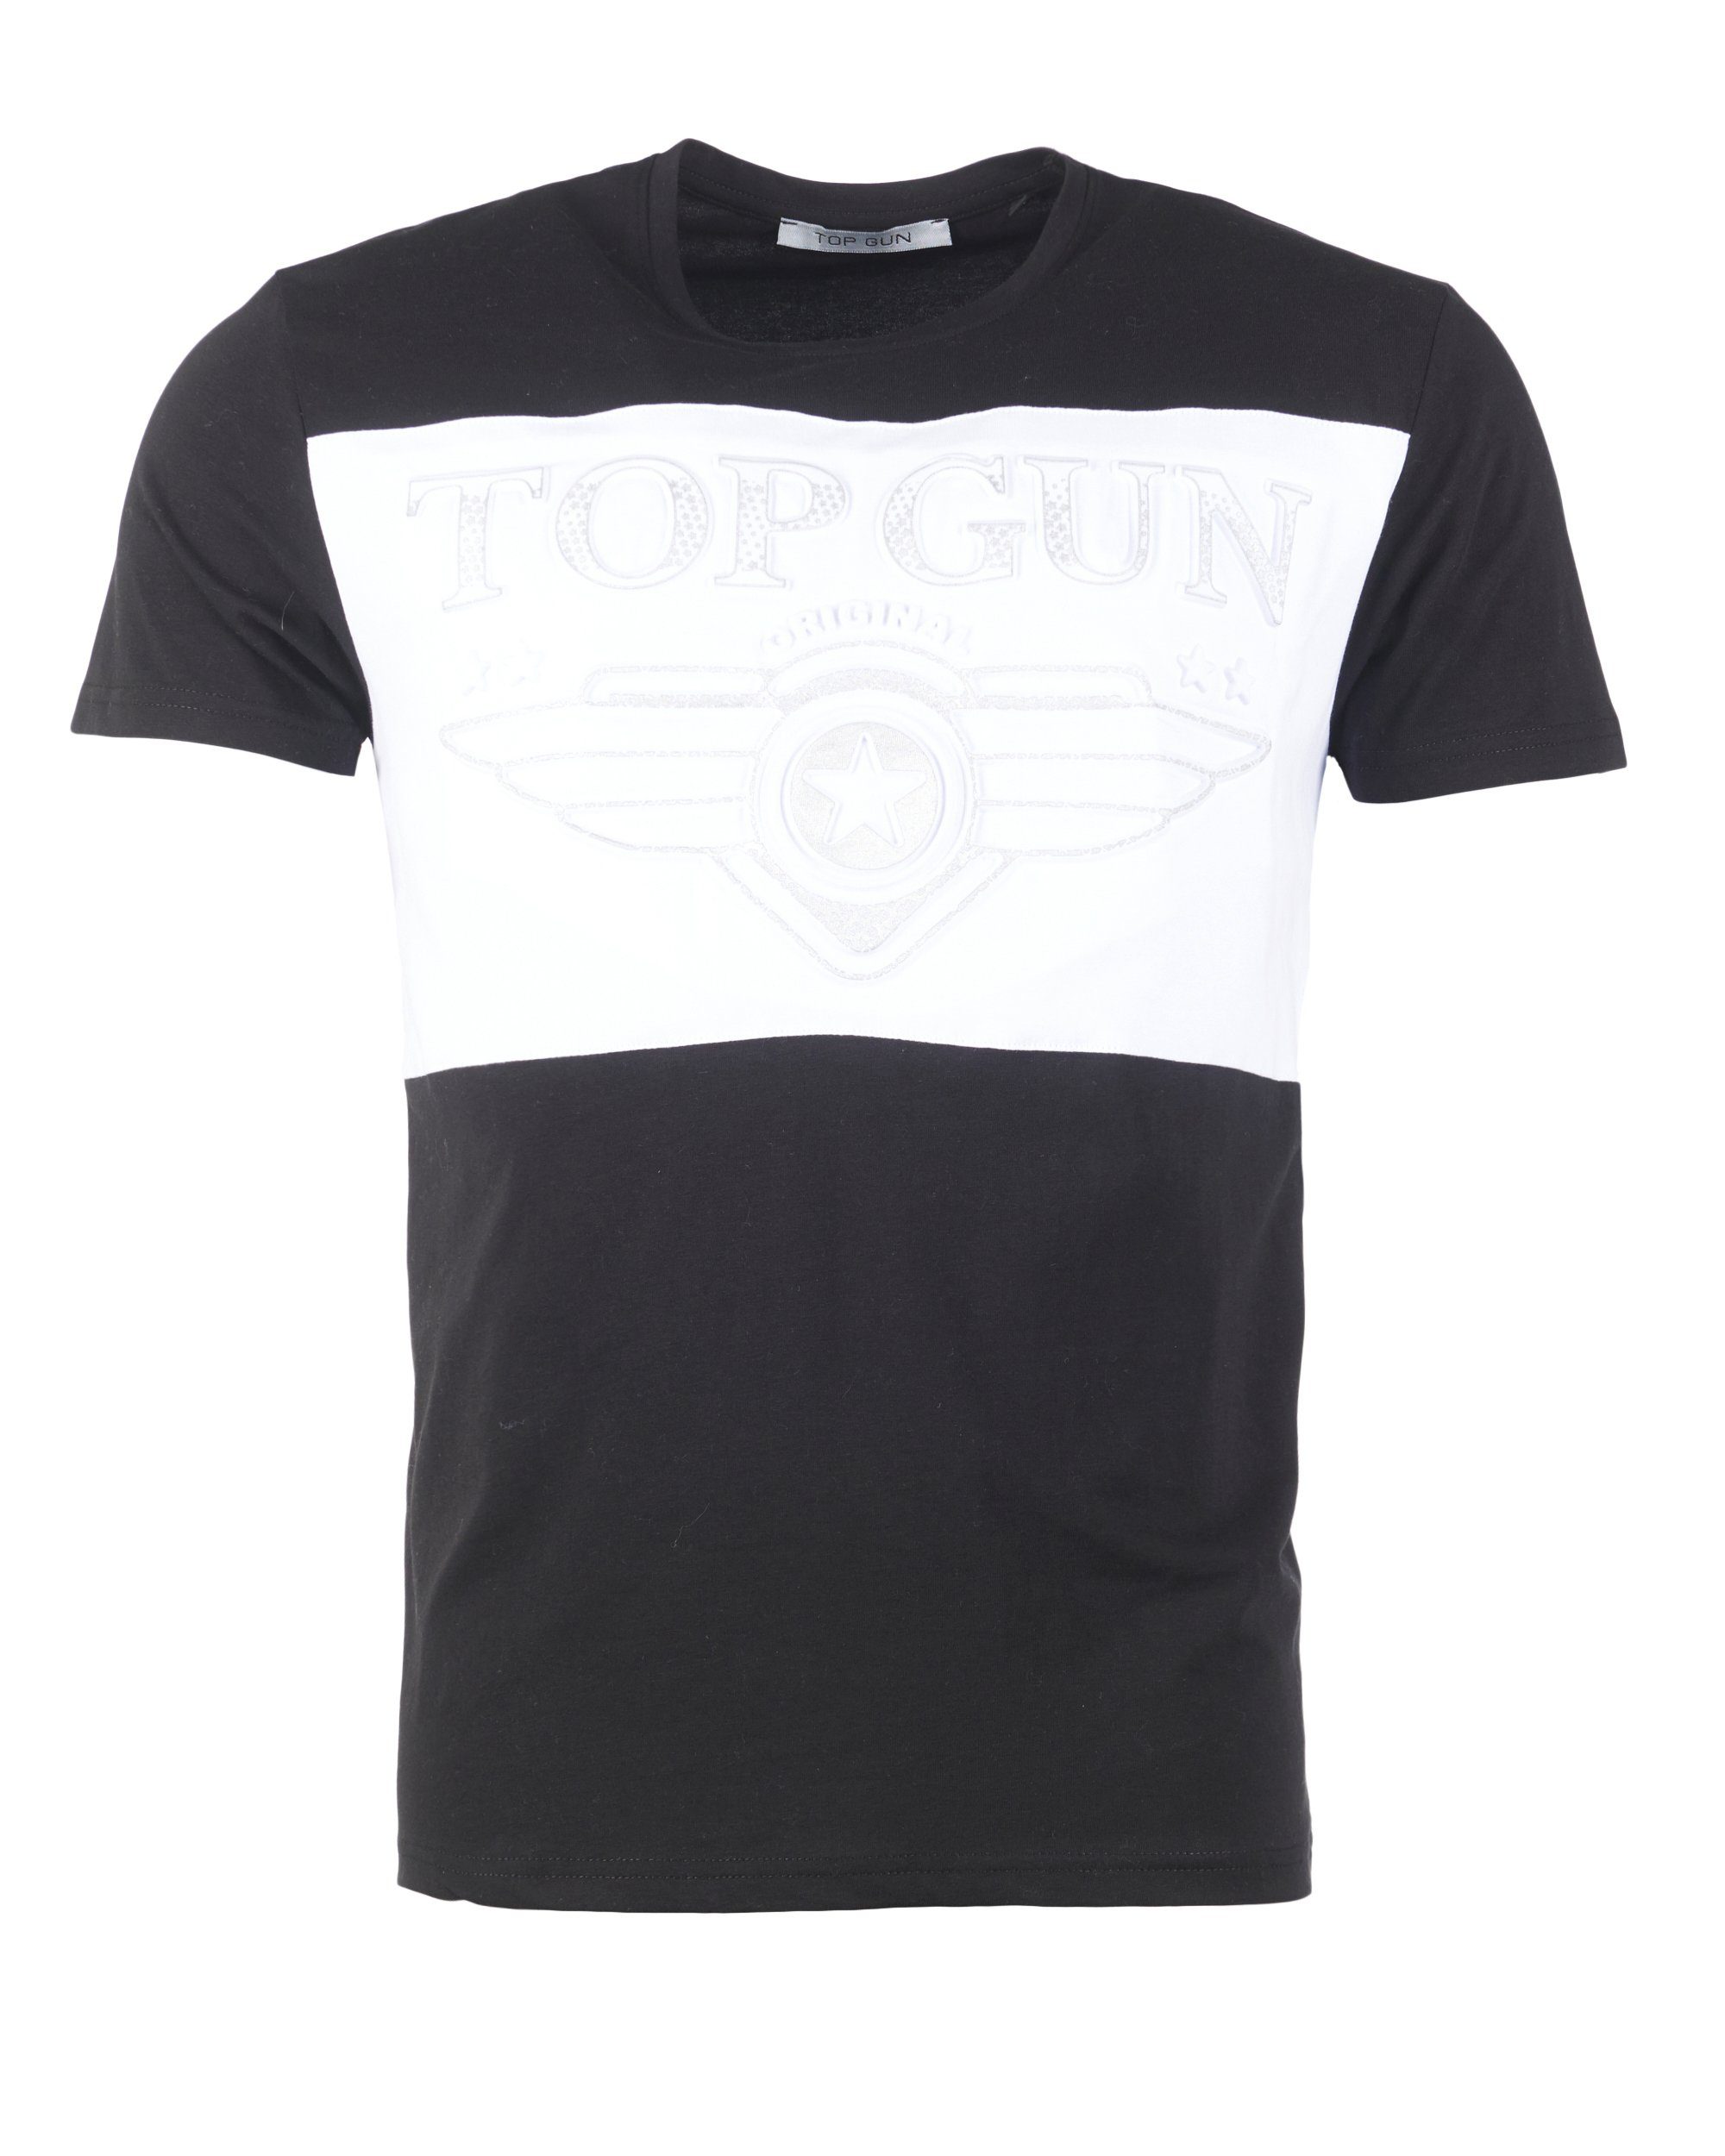 TG20193153 Destroy T-Shirt TOP black/white GUN